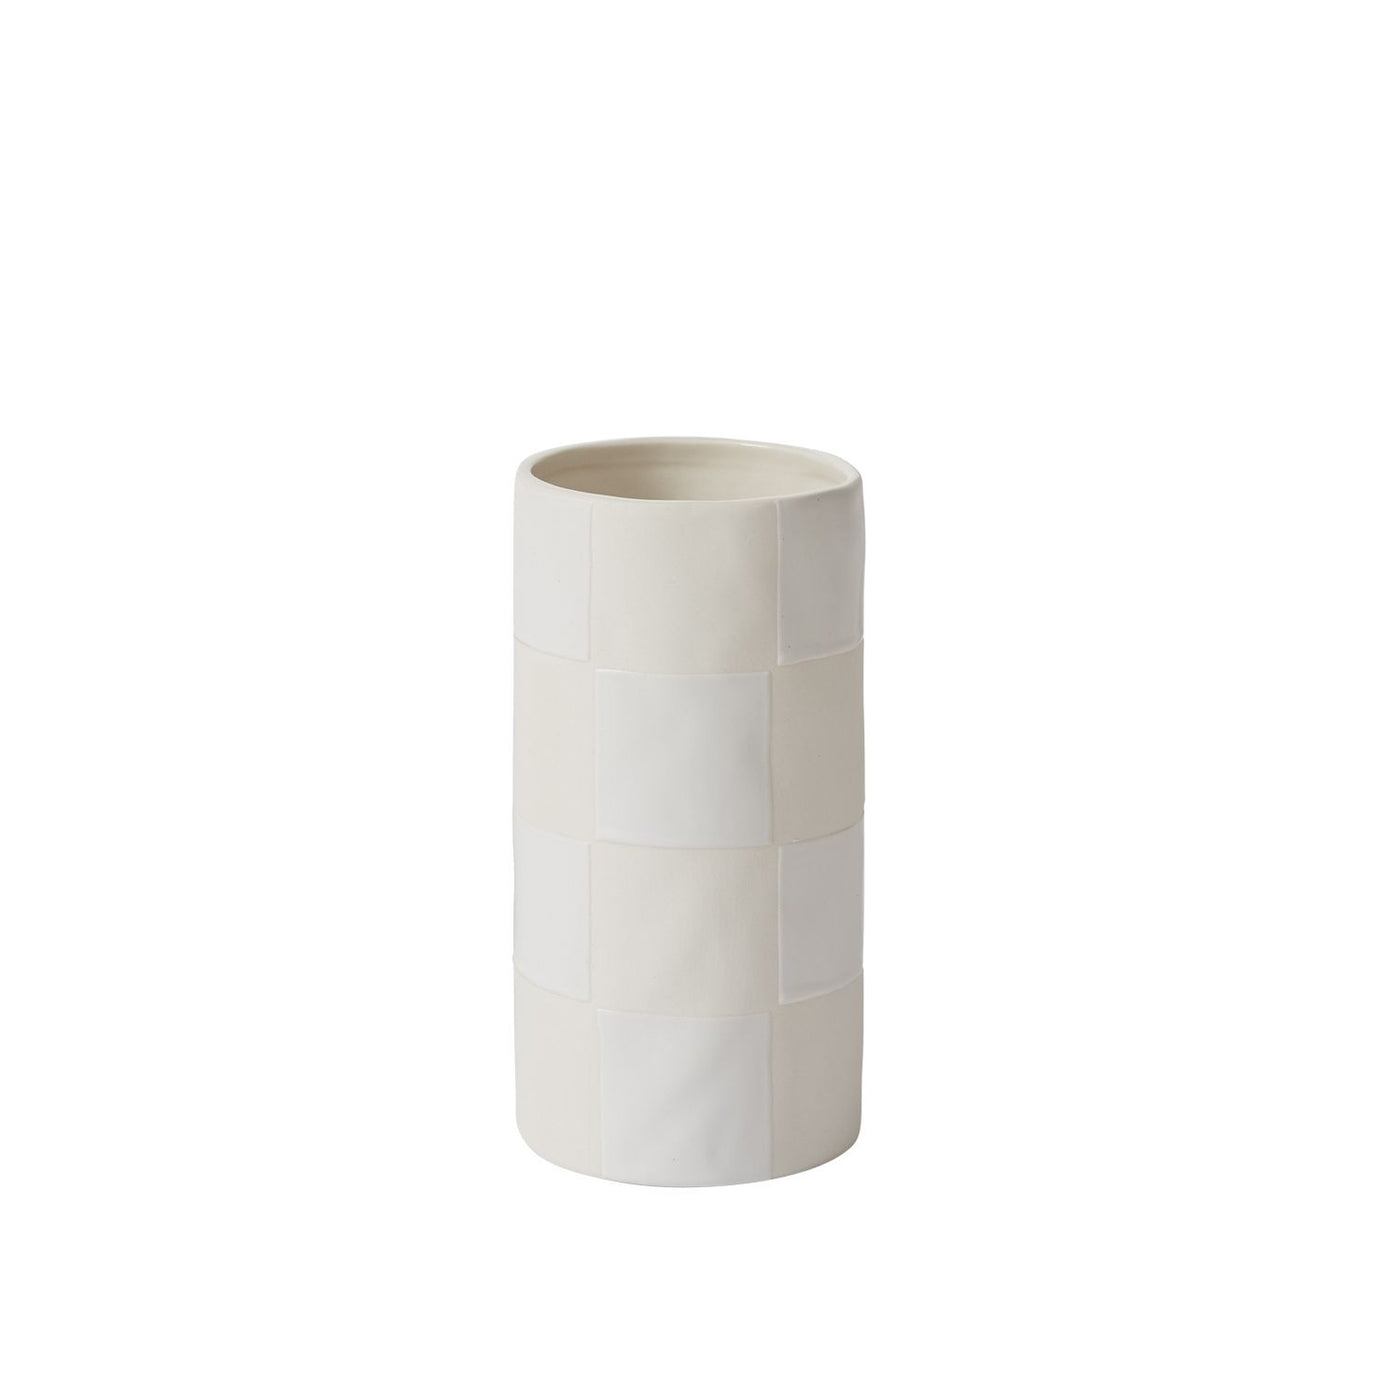 Off-White Checkerboard Vase, Small